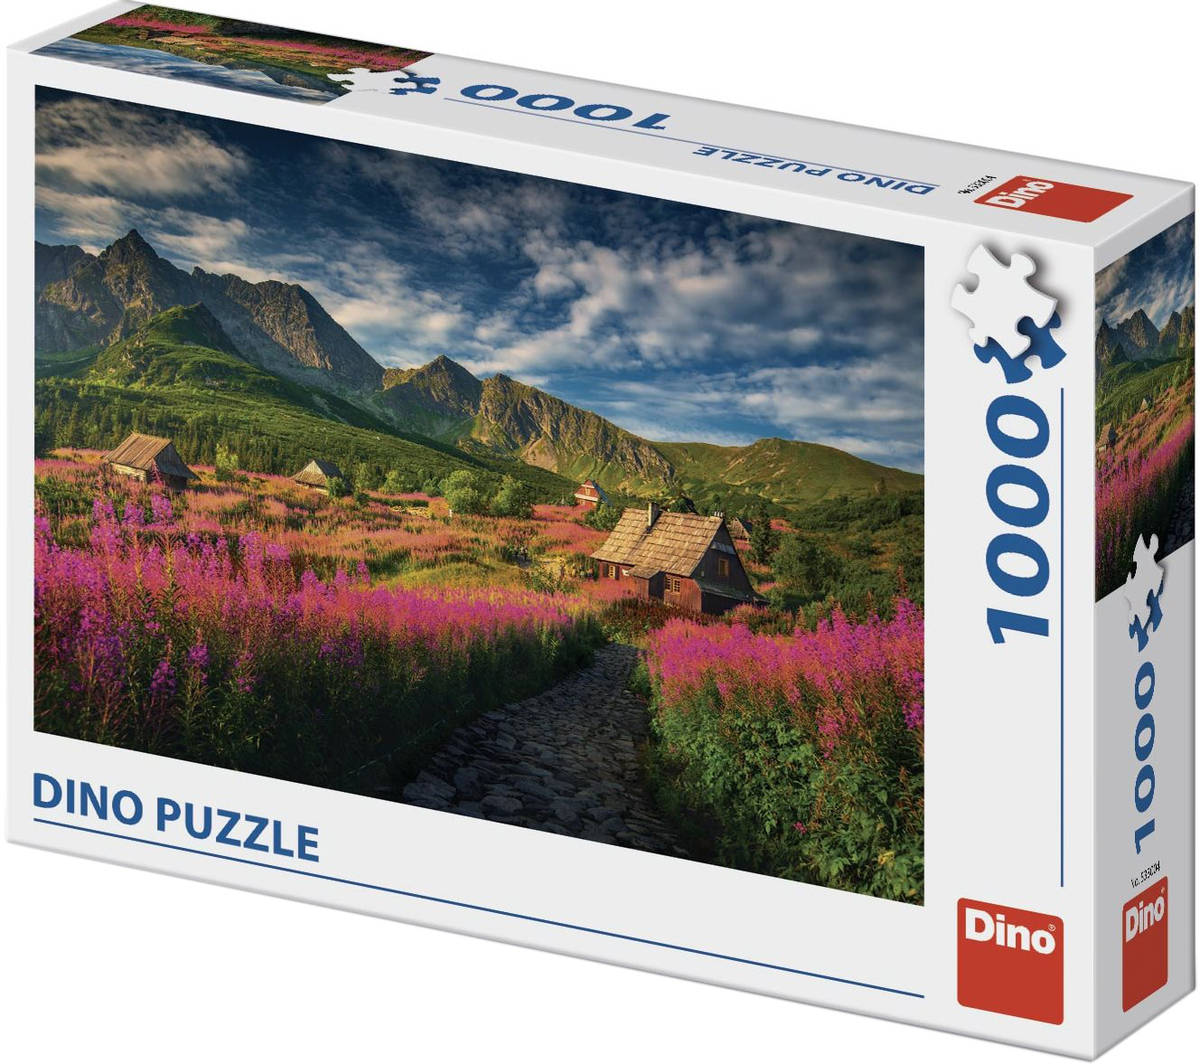 Fotografie DINO Puzzle Gaseinicova dolina 66x47cm foto skládačka 1000 dílků v krabici